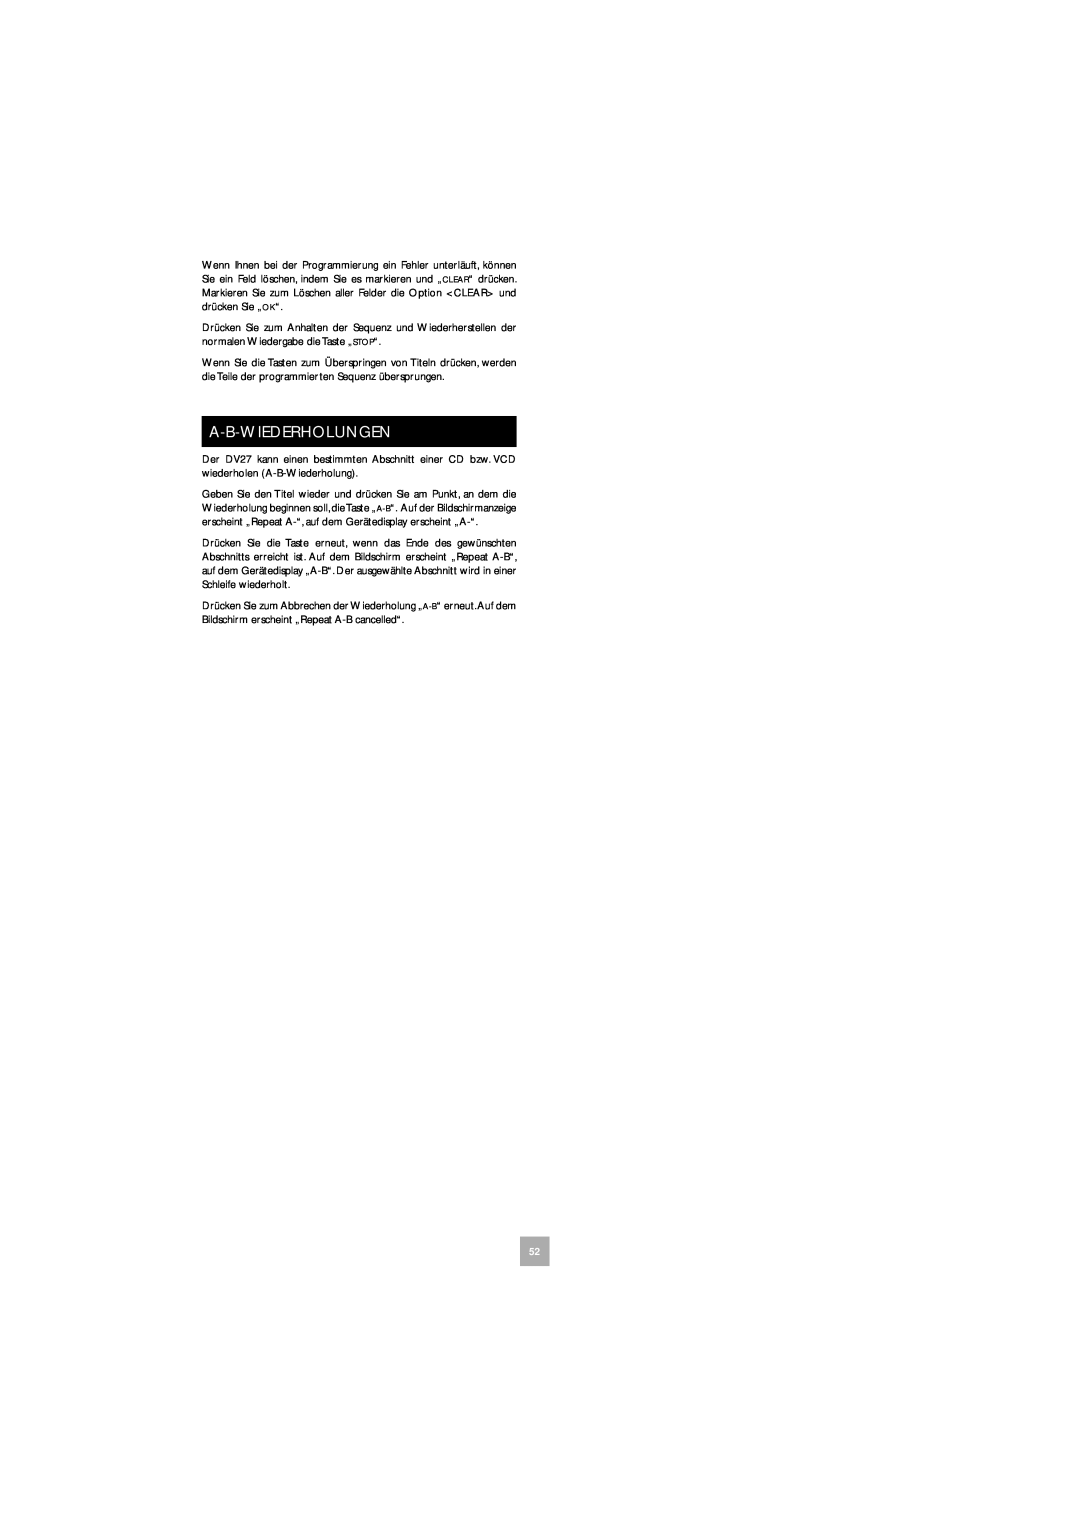 Arcam DV27 manual A-B-Wiederholungen 